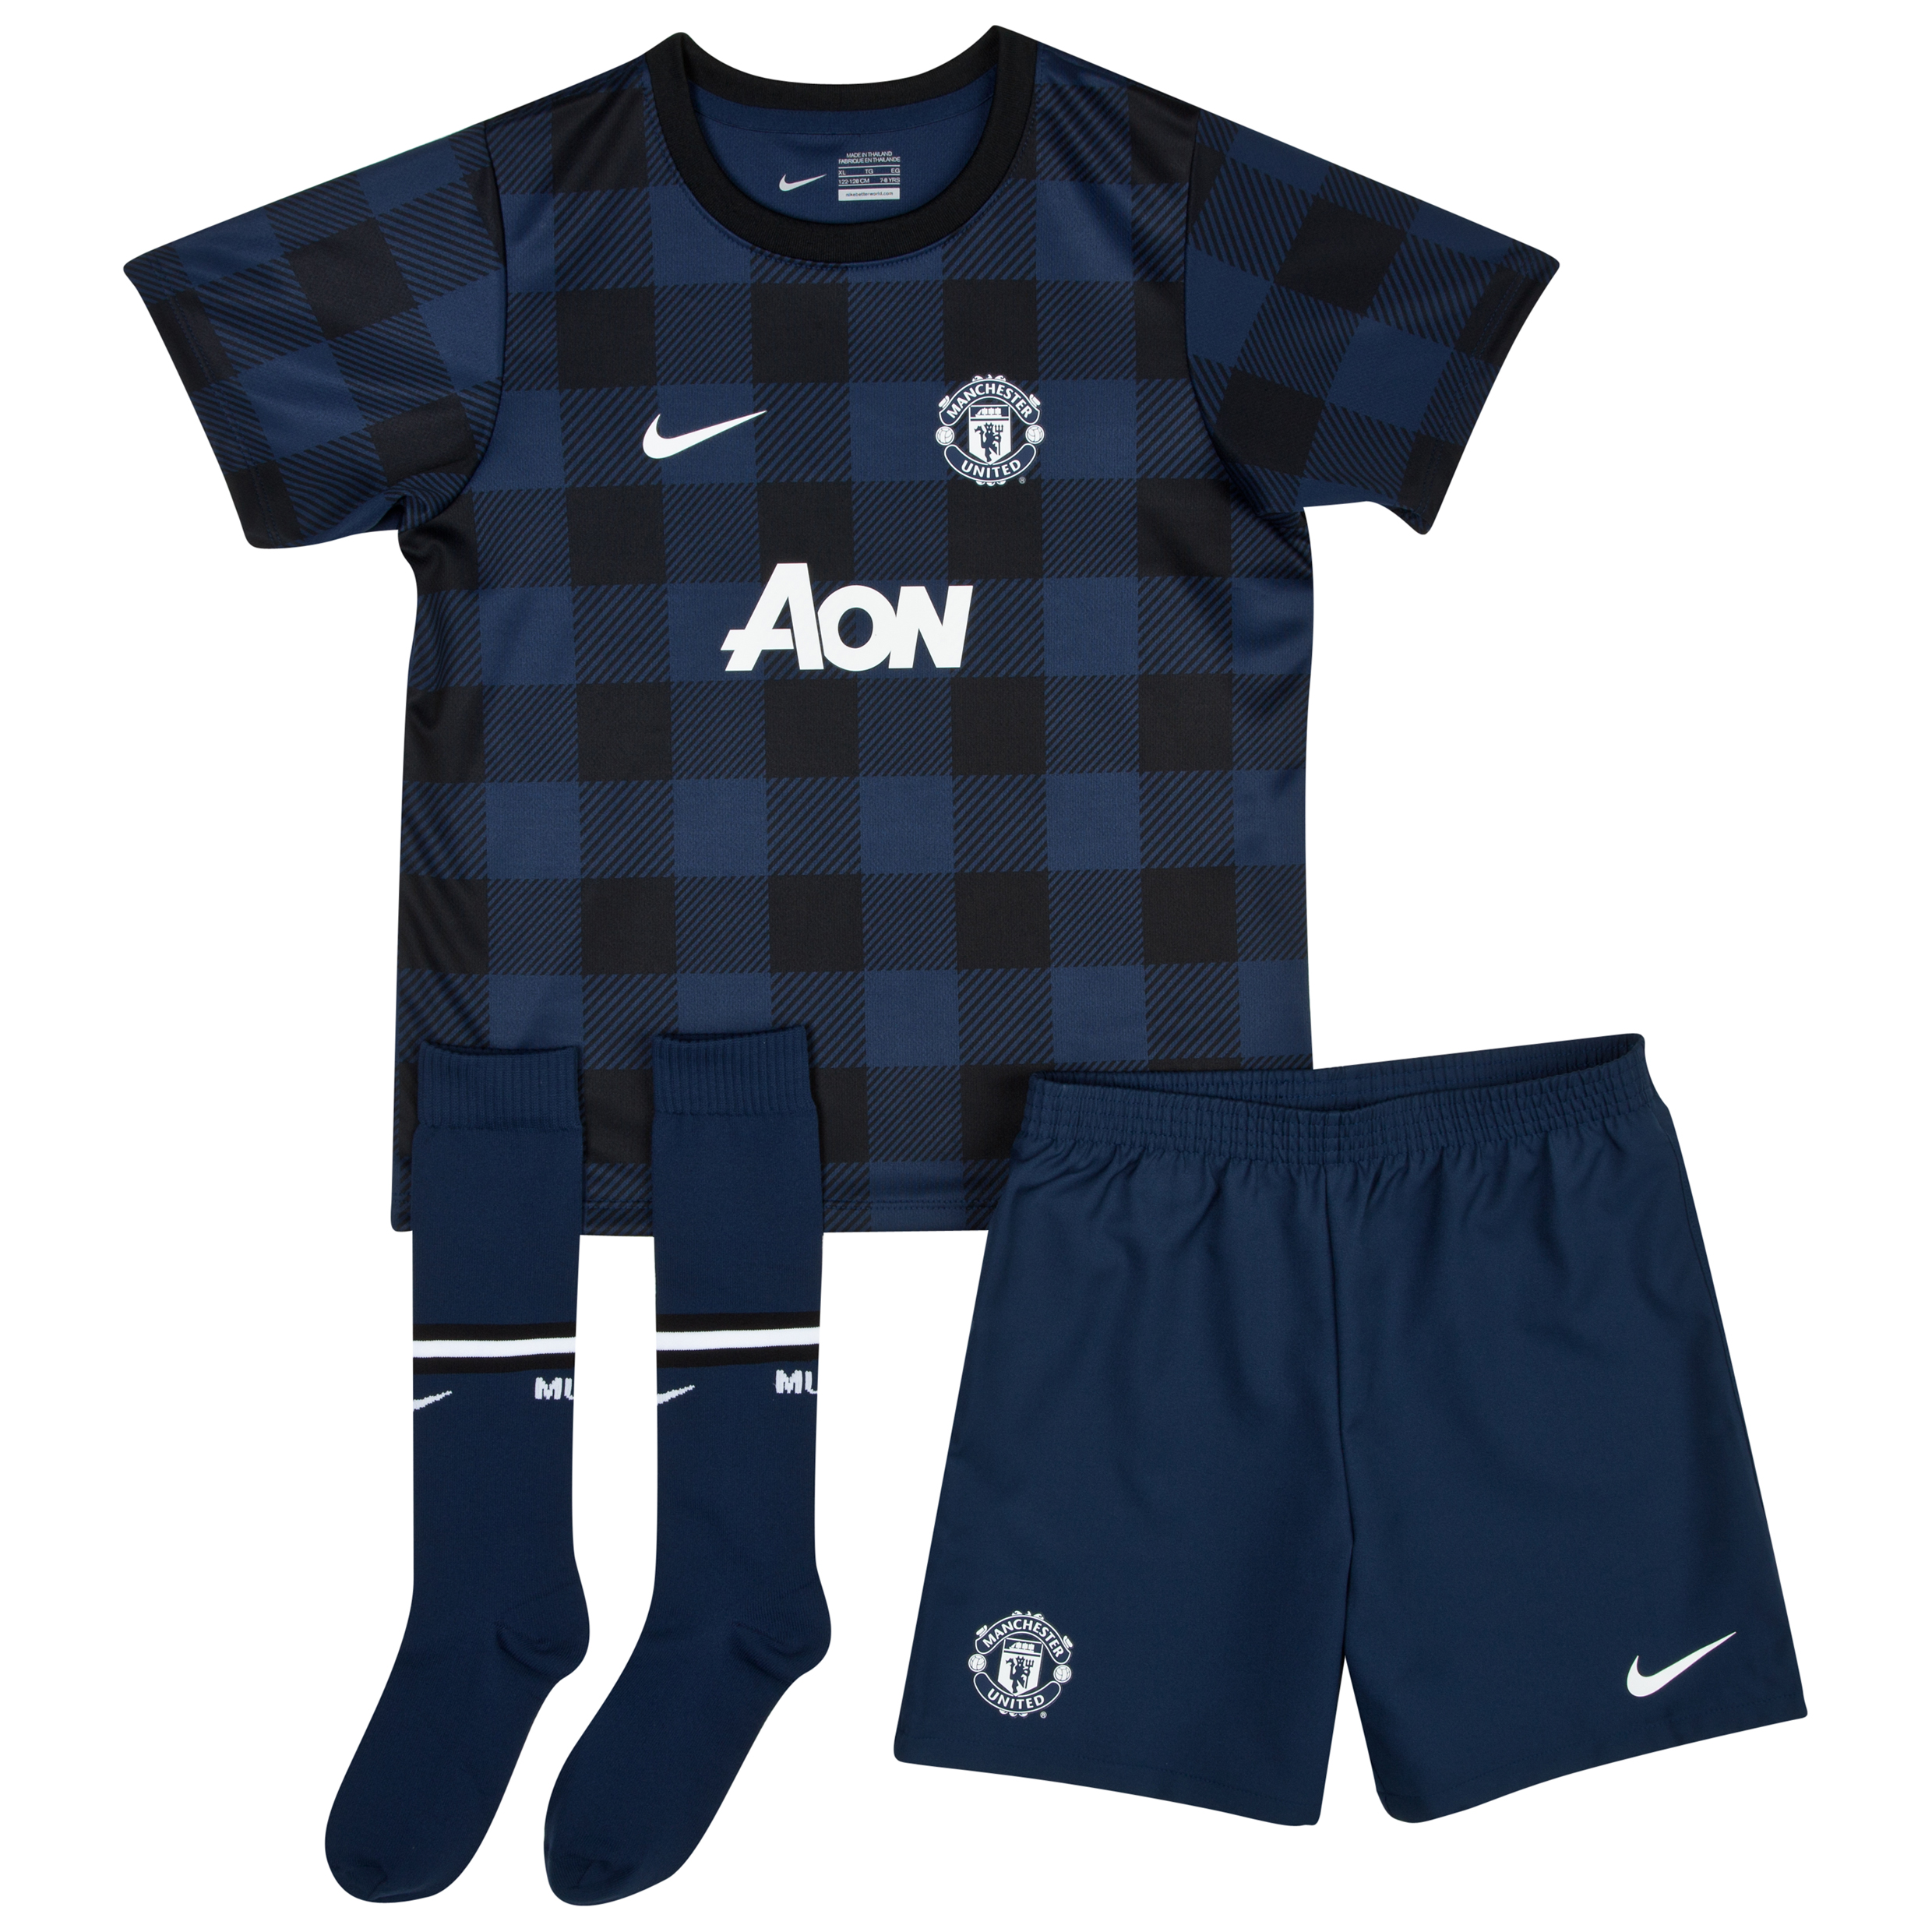 Manchester United Away Kit 2013/14 - Little Boys